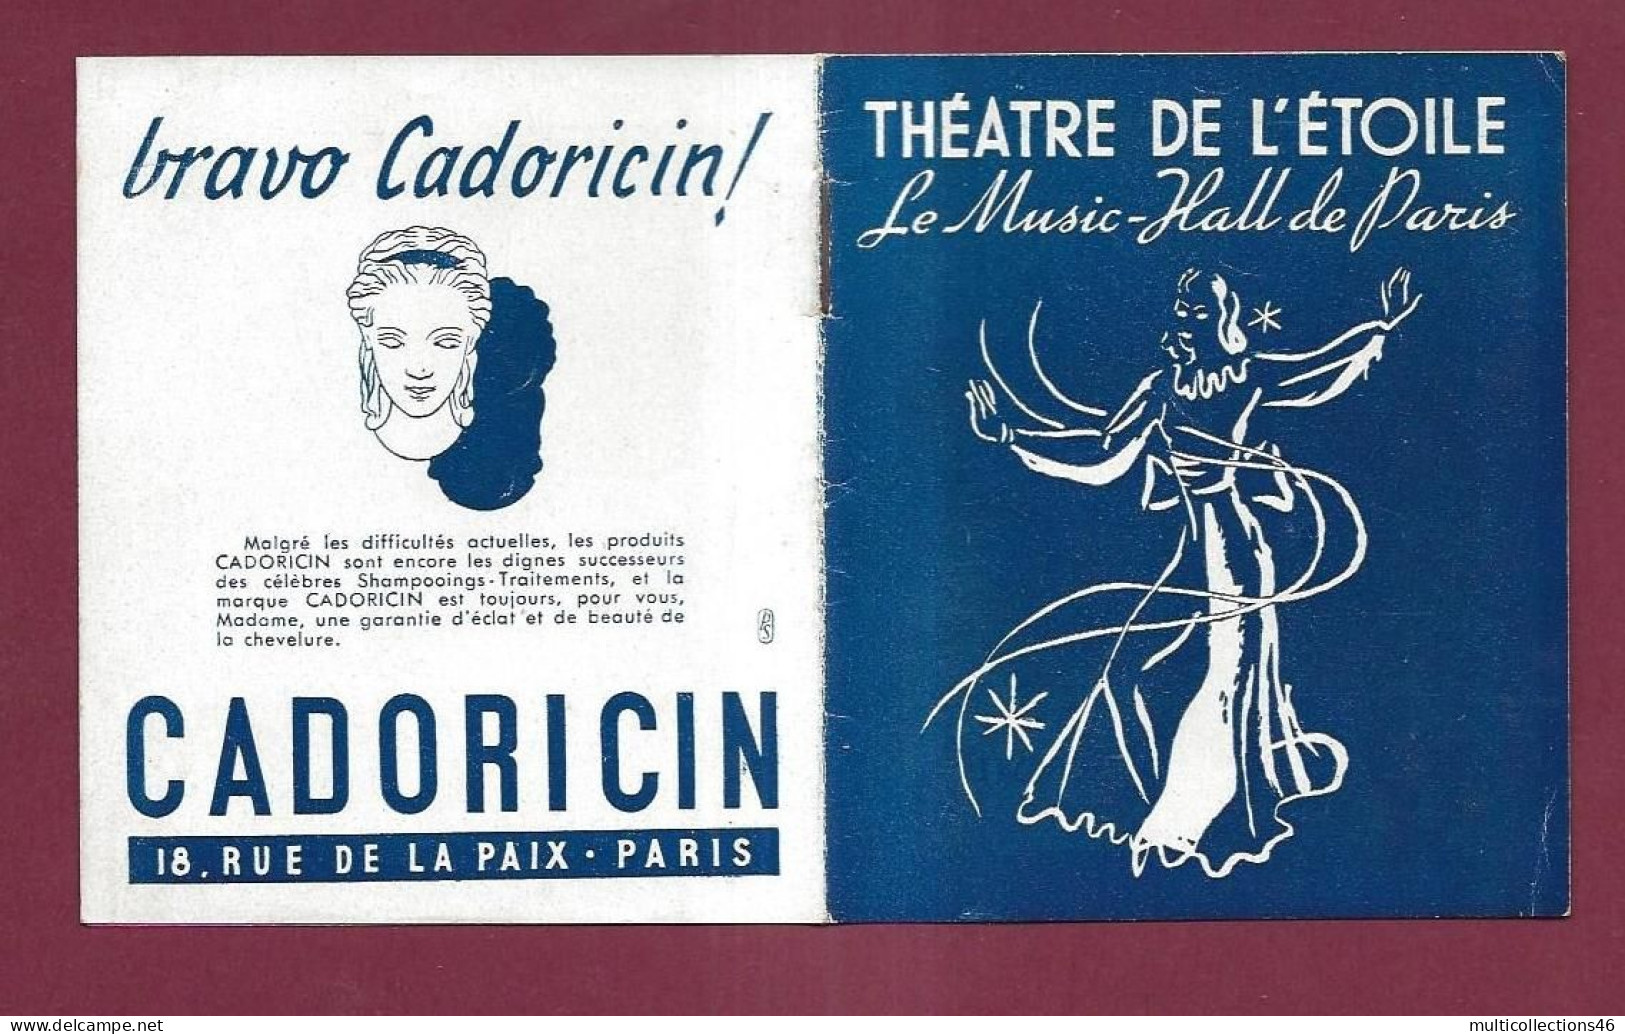 150524A - PROGRAMME THEATRE DE L'ETOILE - Music Hall 1945 46 EDITH PIAF Orchestre Etoile Acrobate Les Bel Air - Programs